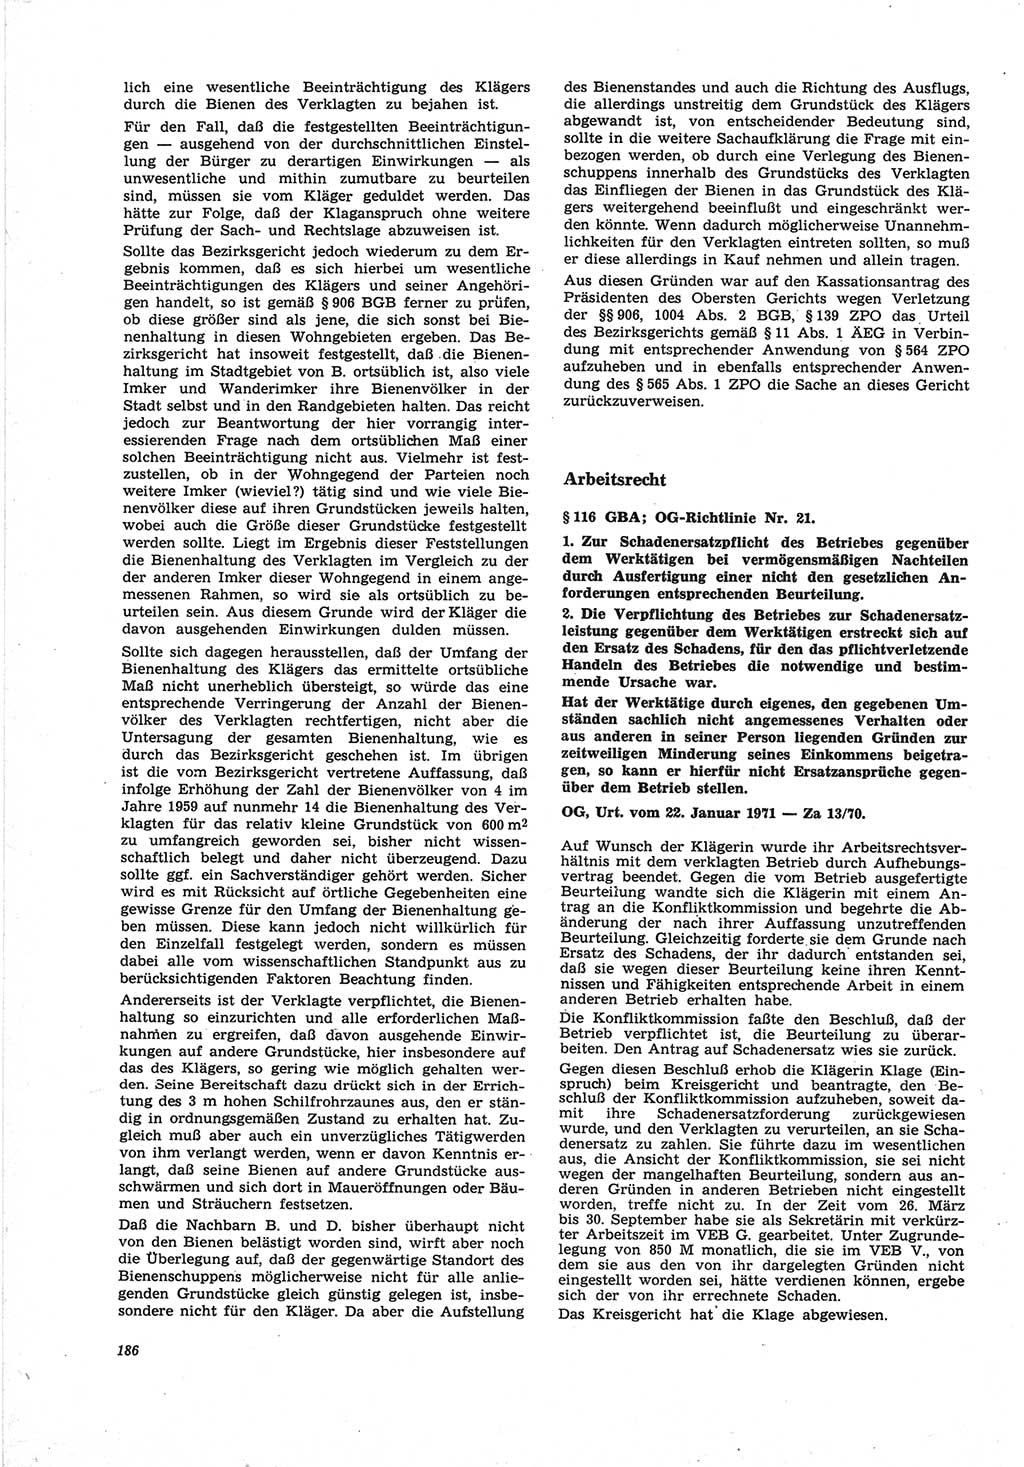 Neue Justiz (NJ), Zeitschrift für Recht und Rechtswissenschaft [Deutsche Demokratische Republik (DDR)], 25. Jahrgang 1971, Seite 186 (NJ DDR 1971, S. 186)